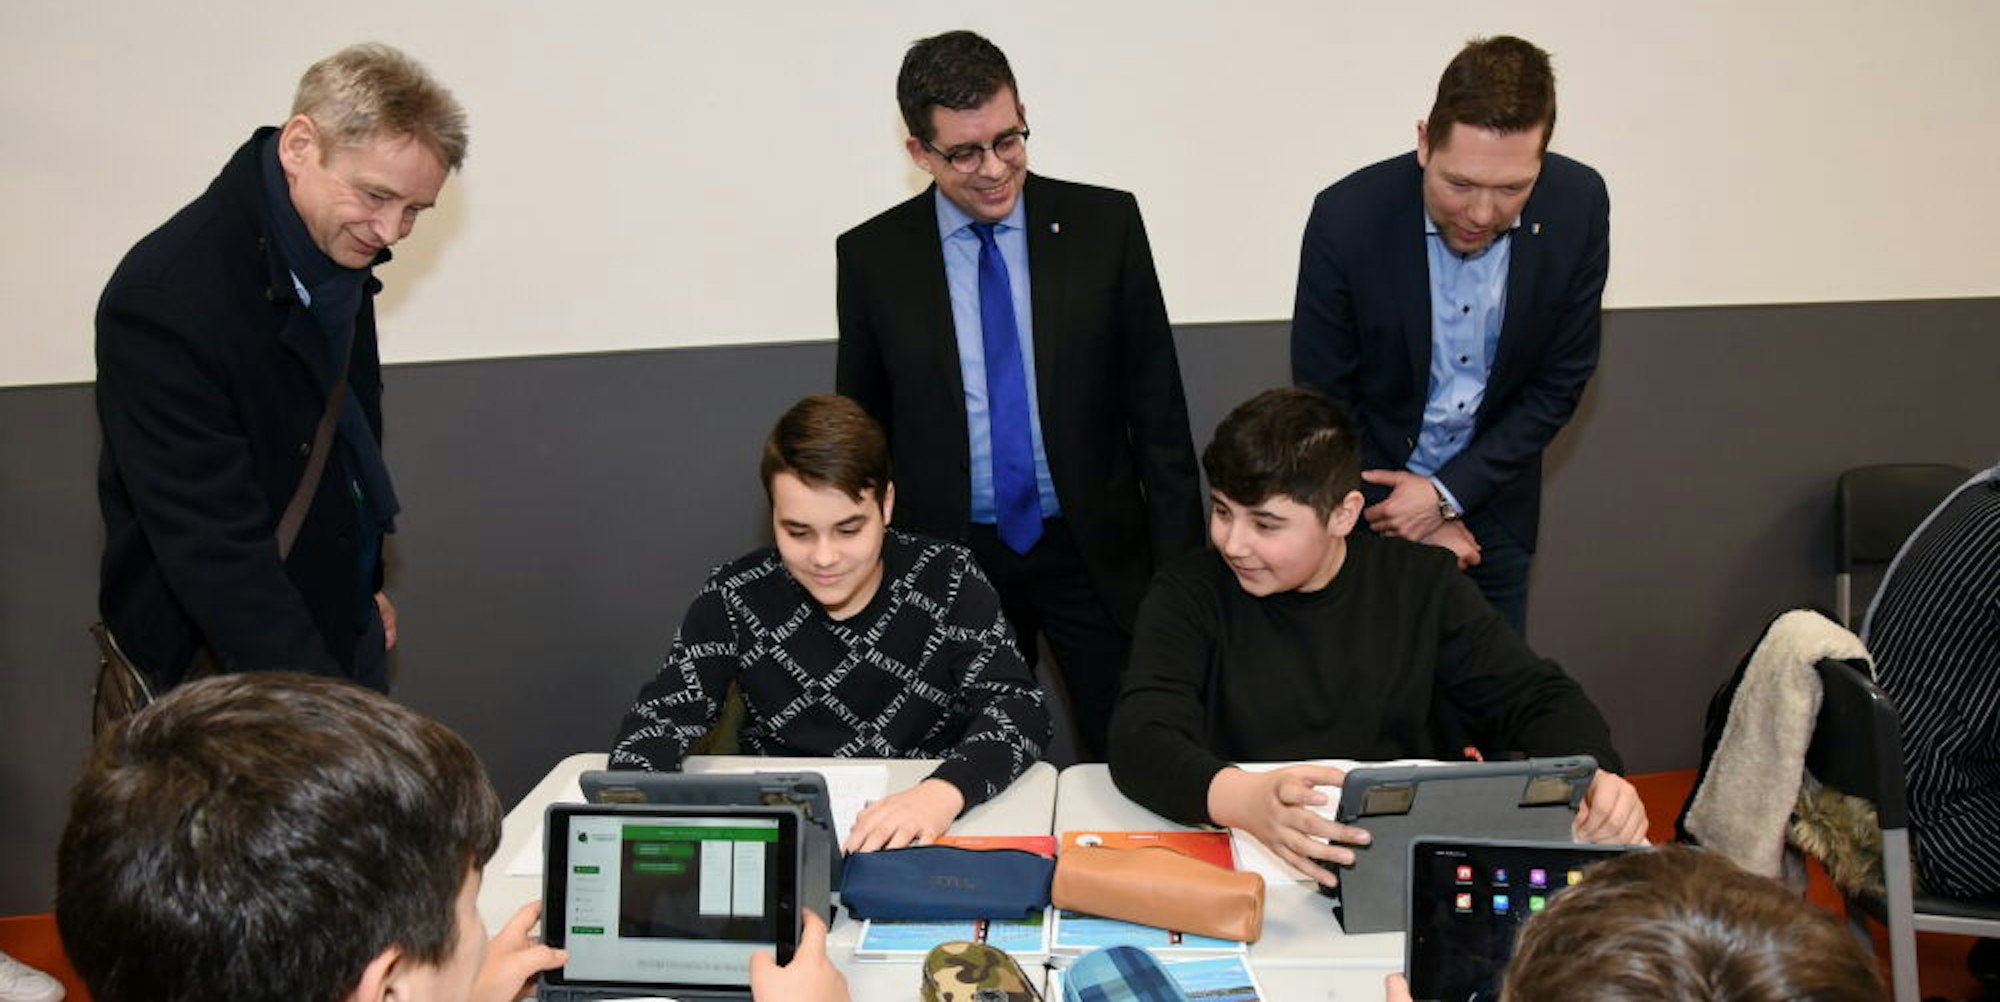 Seit dem Jahr 2020 stattet die Stadt Gummersbach ihre Schulen, so wie hier die Gesamtschule in Derschlag, mit digitalen Endgeräten aus. Auch im kommenden Jahr ist die weitere Digitalisierung der Schulen im Fokus.